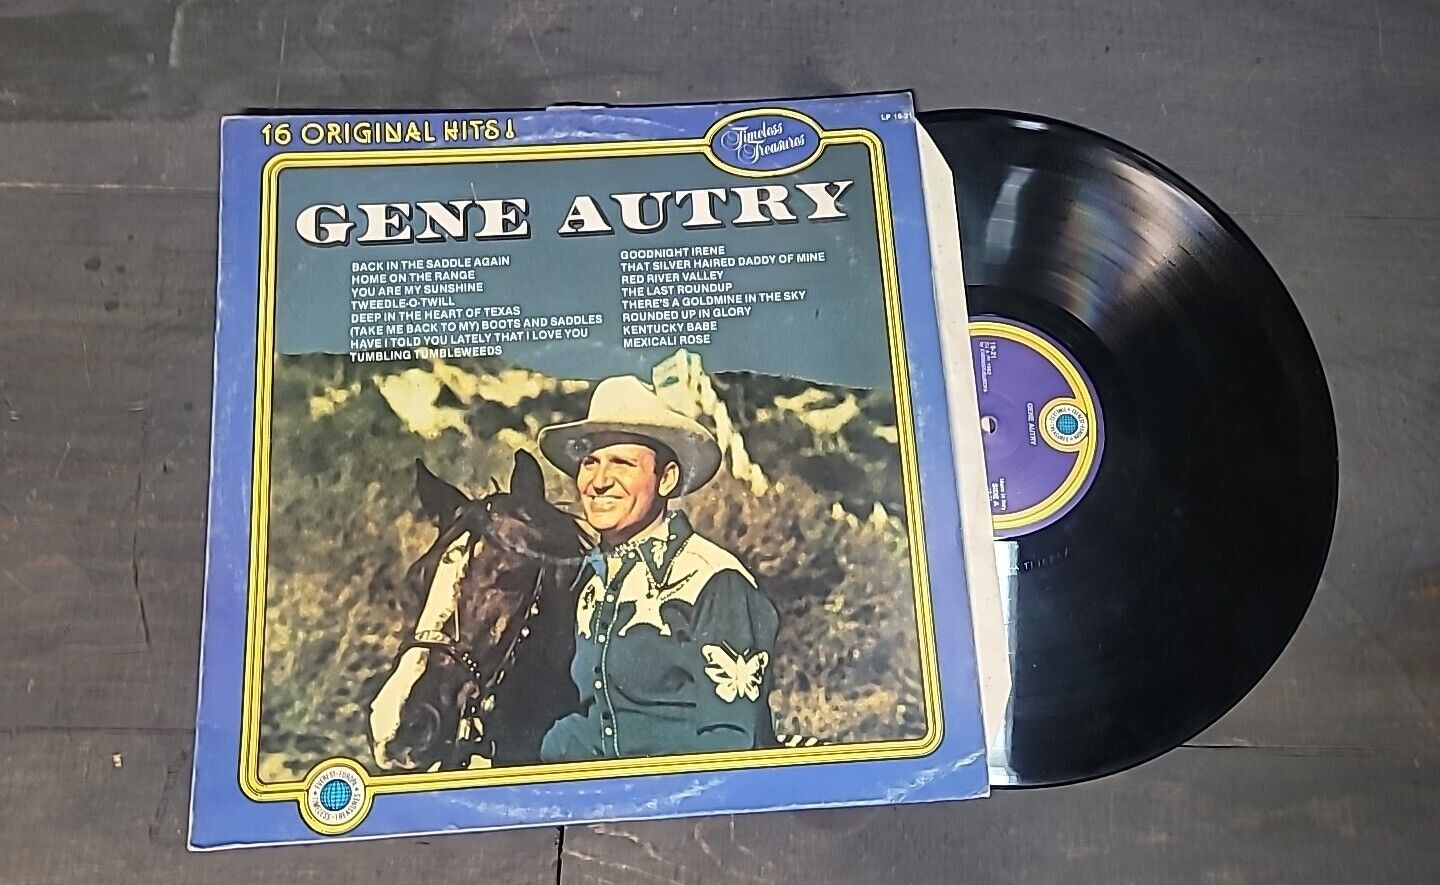 Gene Autry – Gene Autry 16 Original Hits LP-16-21 33RPM VINTAGE RARE VINYL 